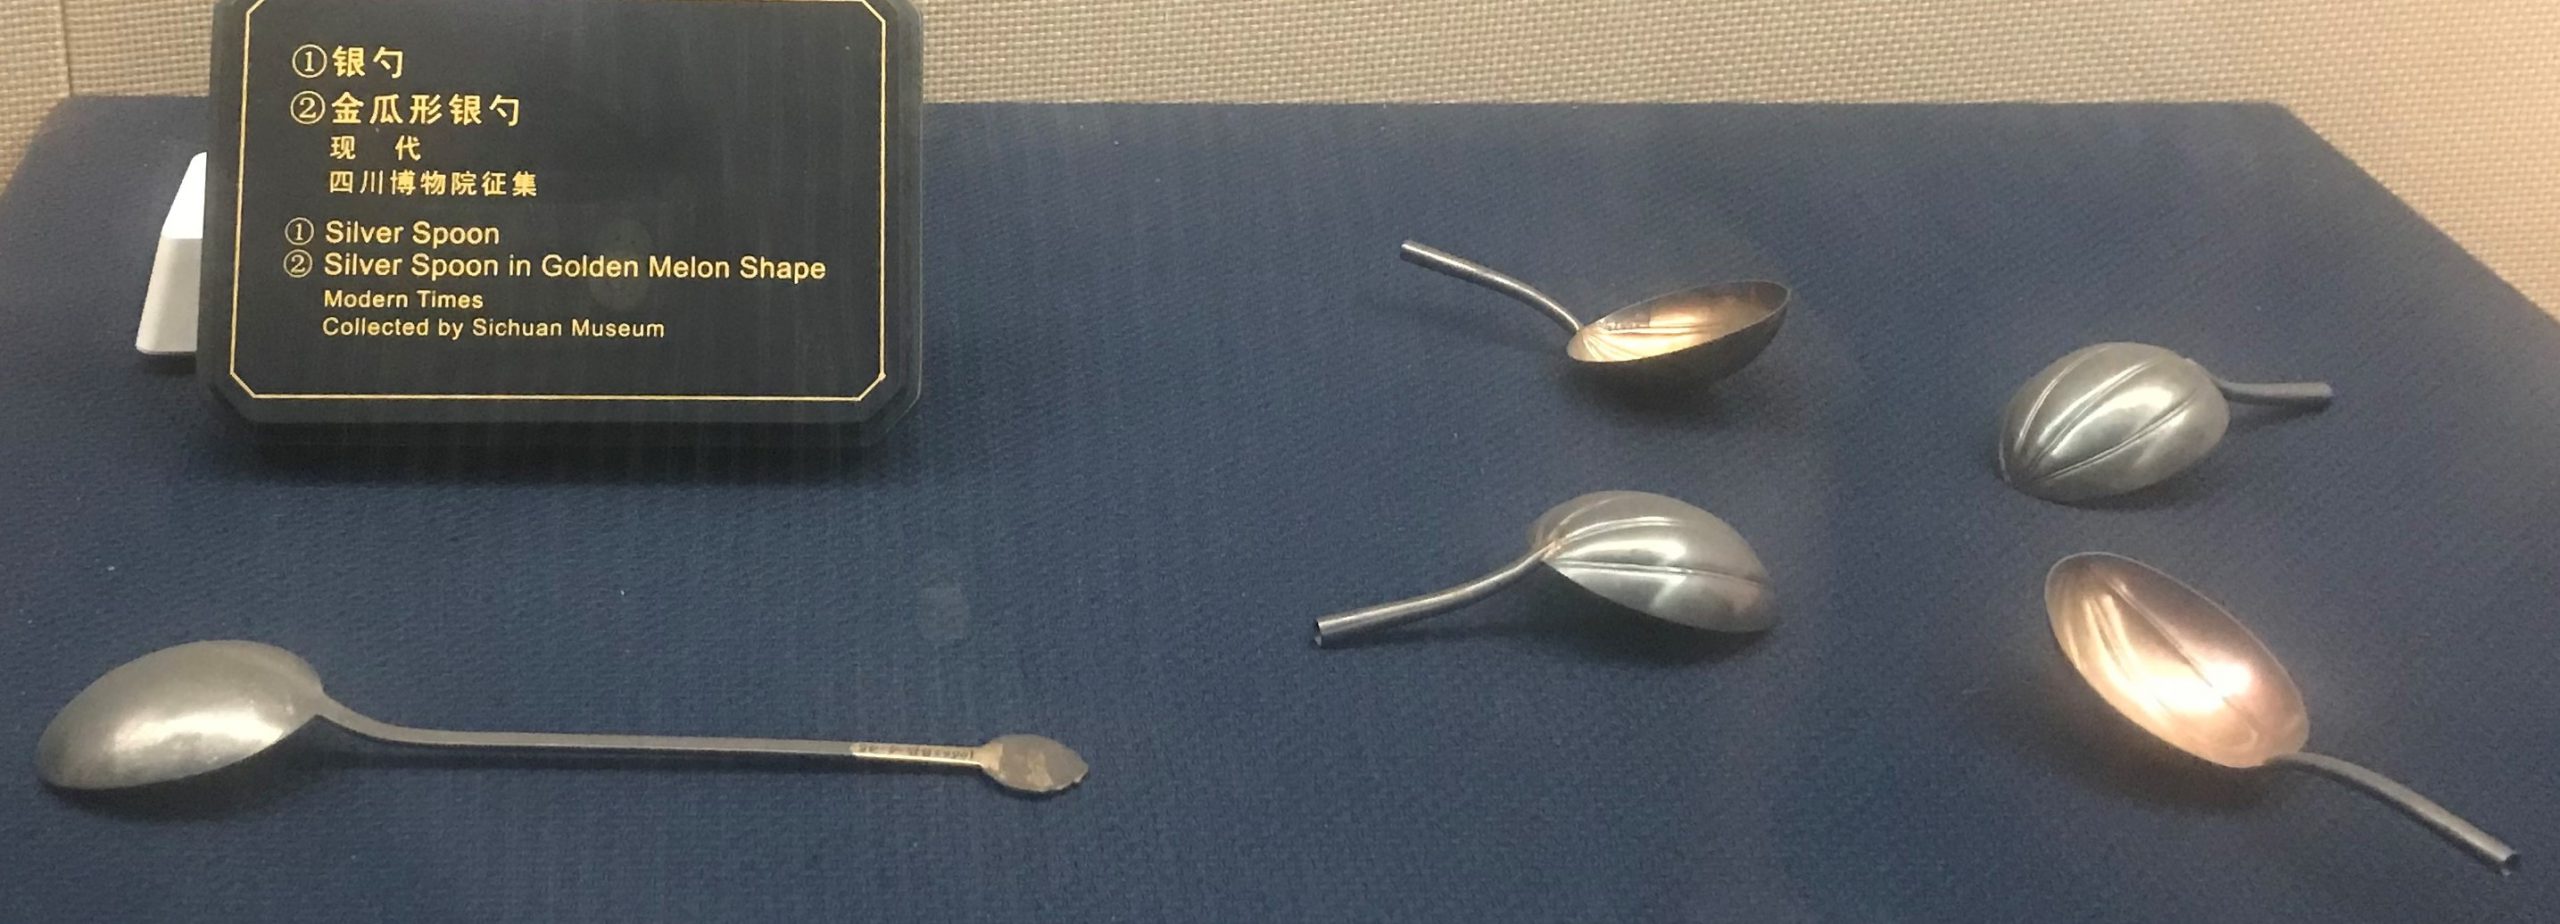 銀勺-金瓜形銀勺-チャン族生活用品-四川民族文物館-四川博物館-成都